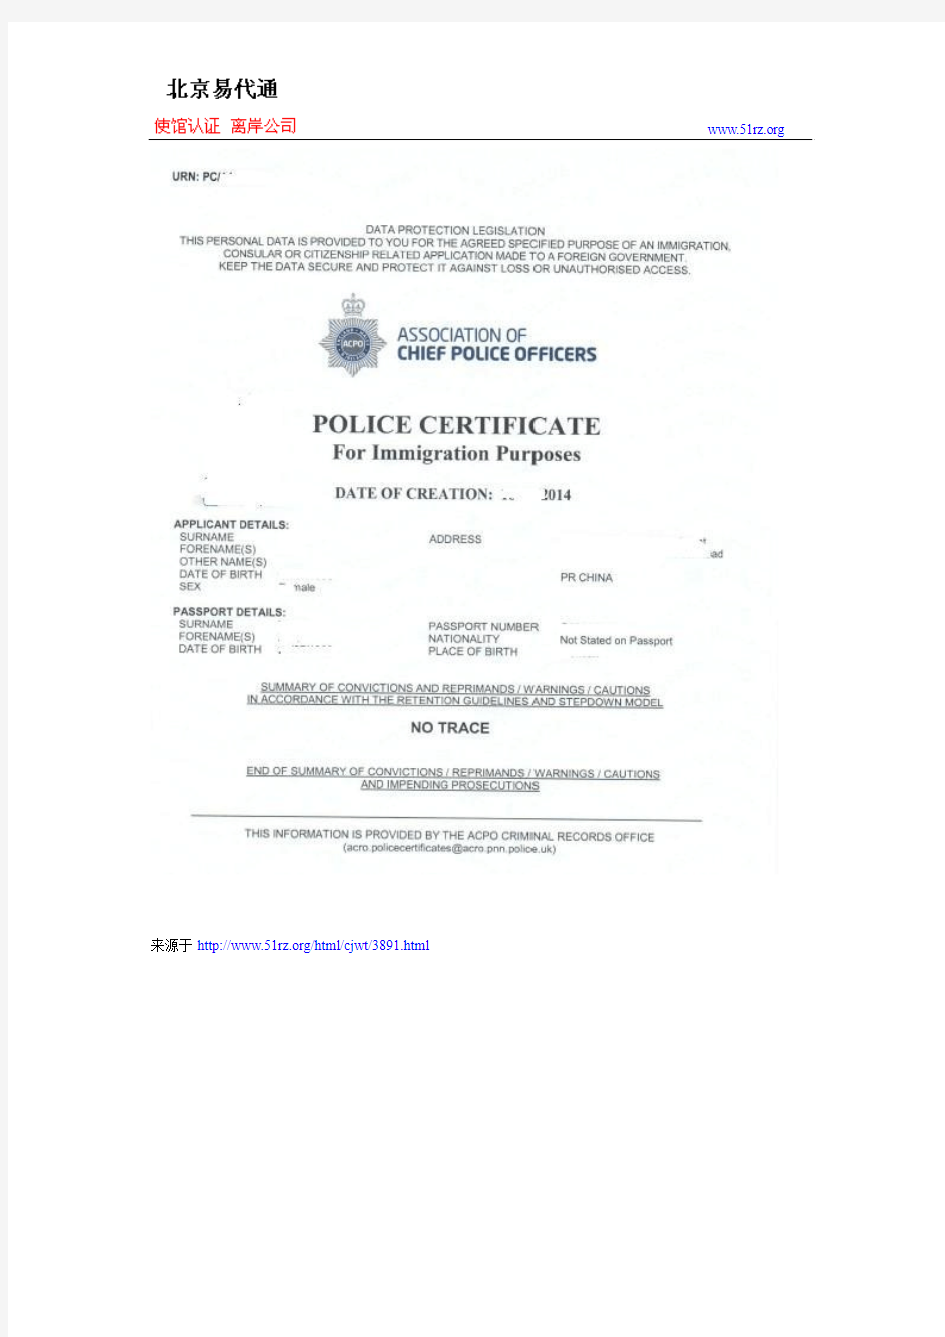 英国无犯罪记录证明公证认证需要提供原件还是复印件